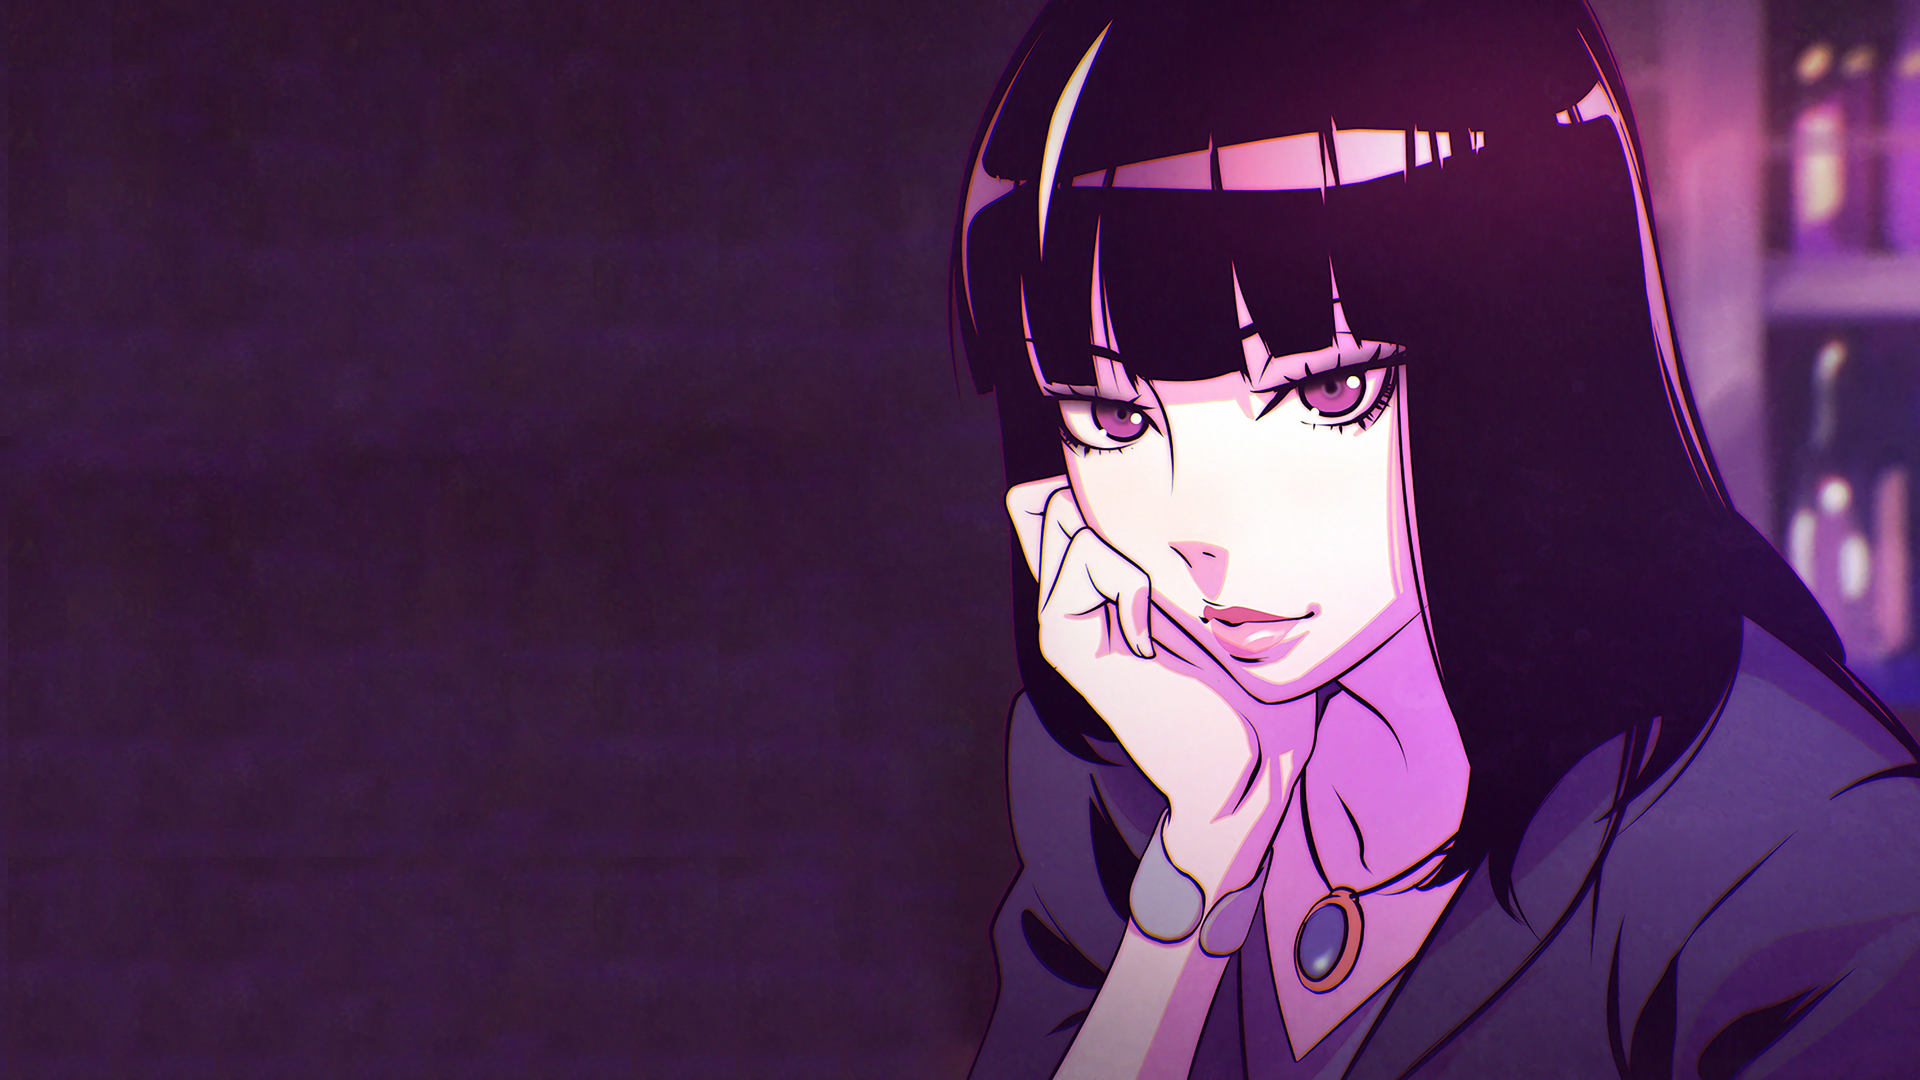 Anime 1920x1080 anime girls Chiyuki anime face purple eyes dark hair